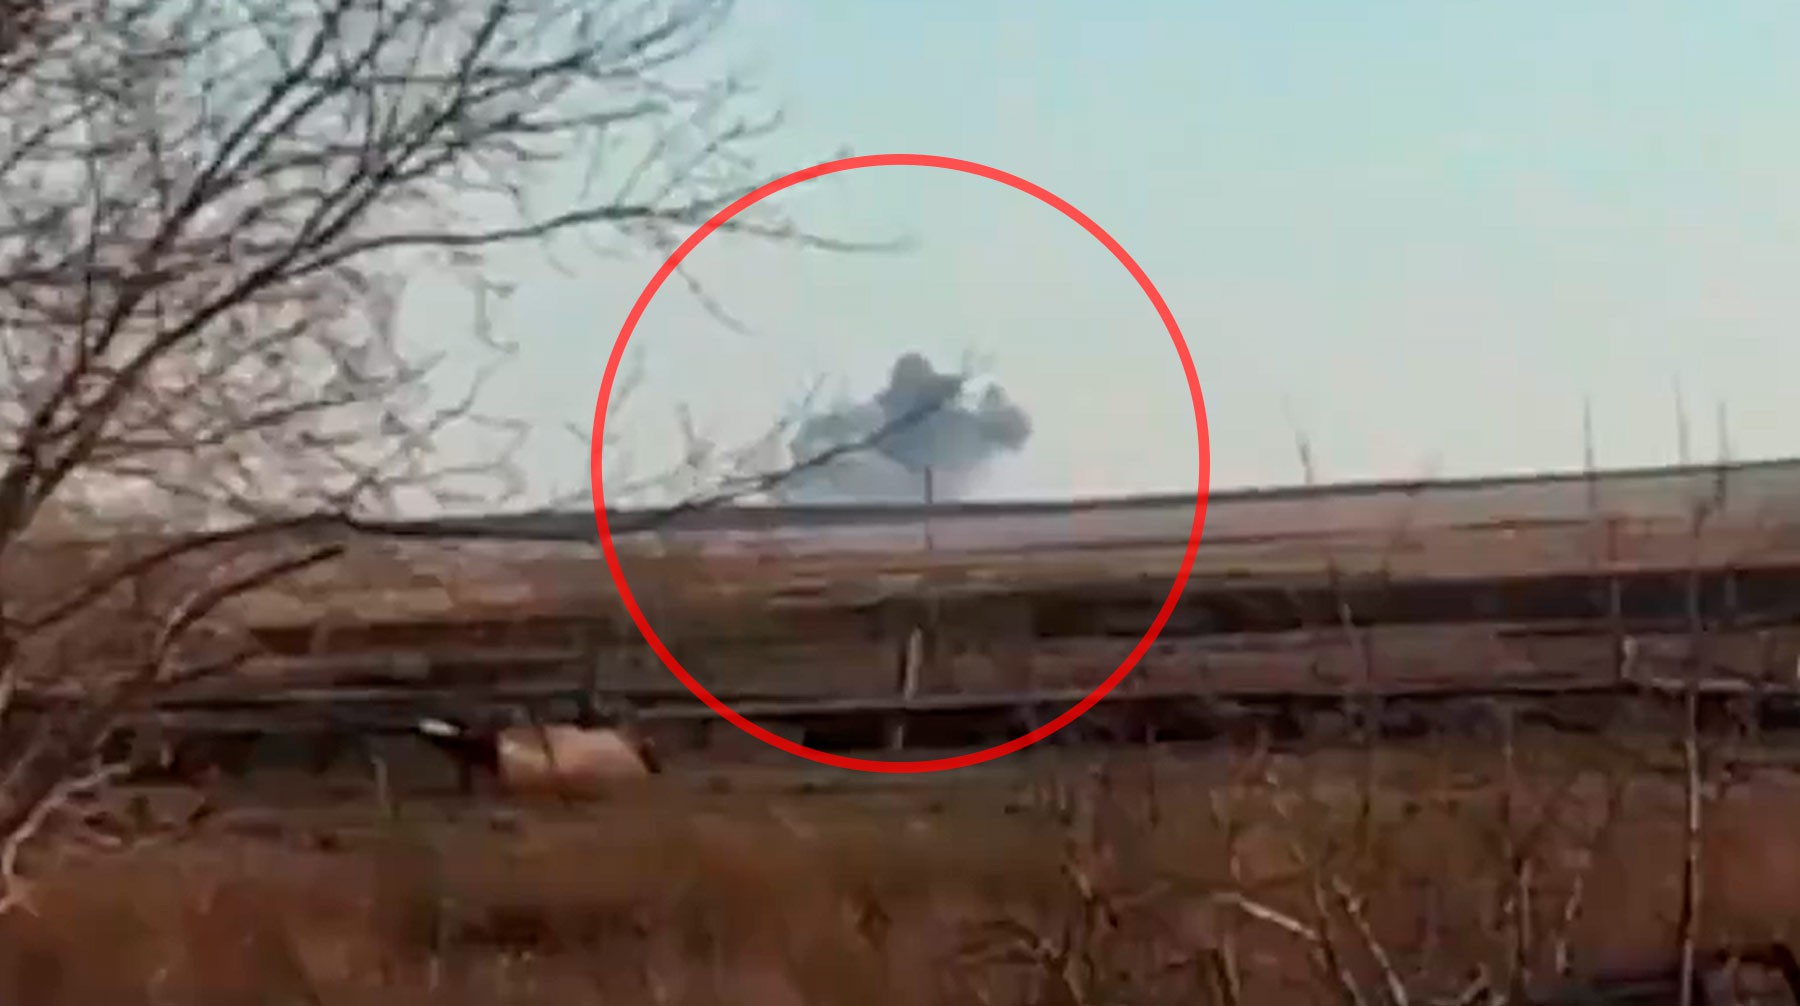 Dailystorm - Появились кадры крушения военного самолета в Казахстане